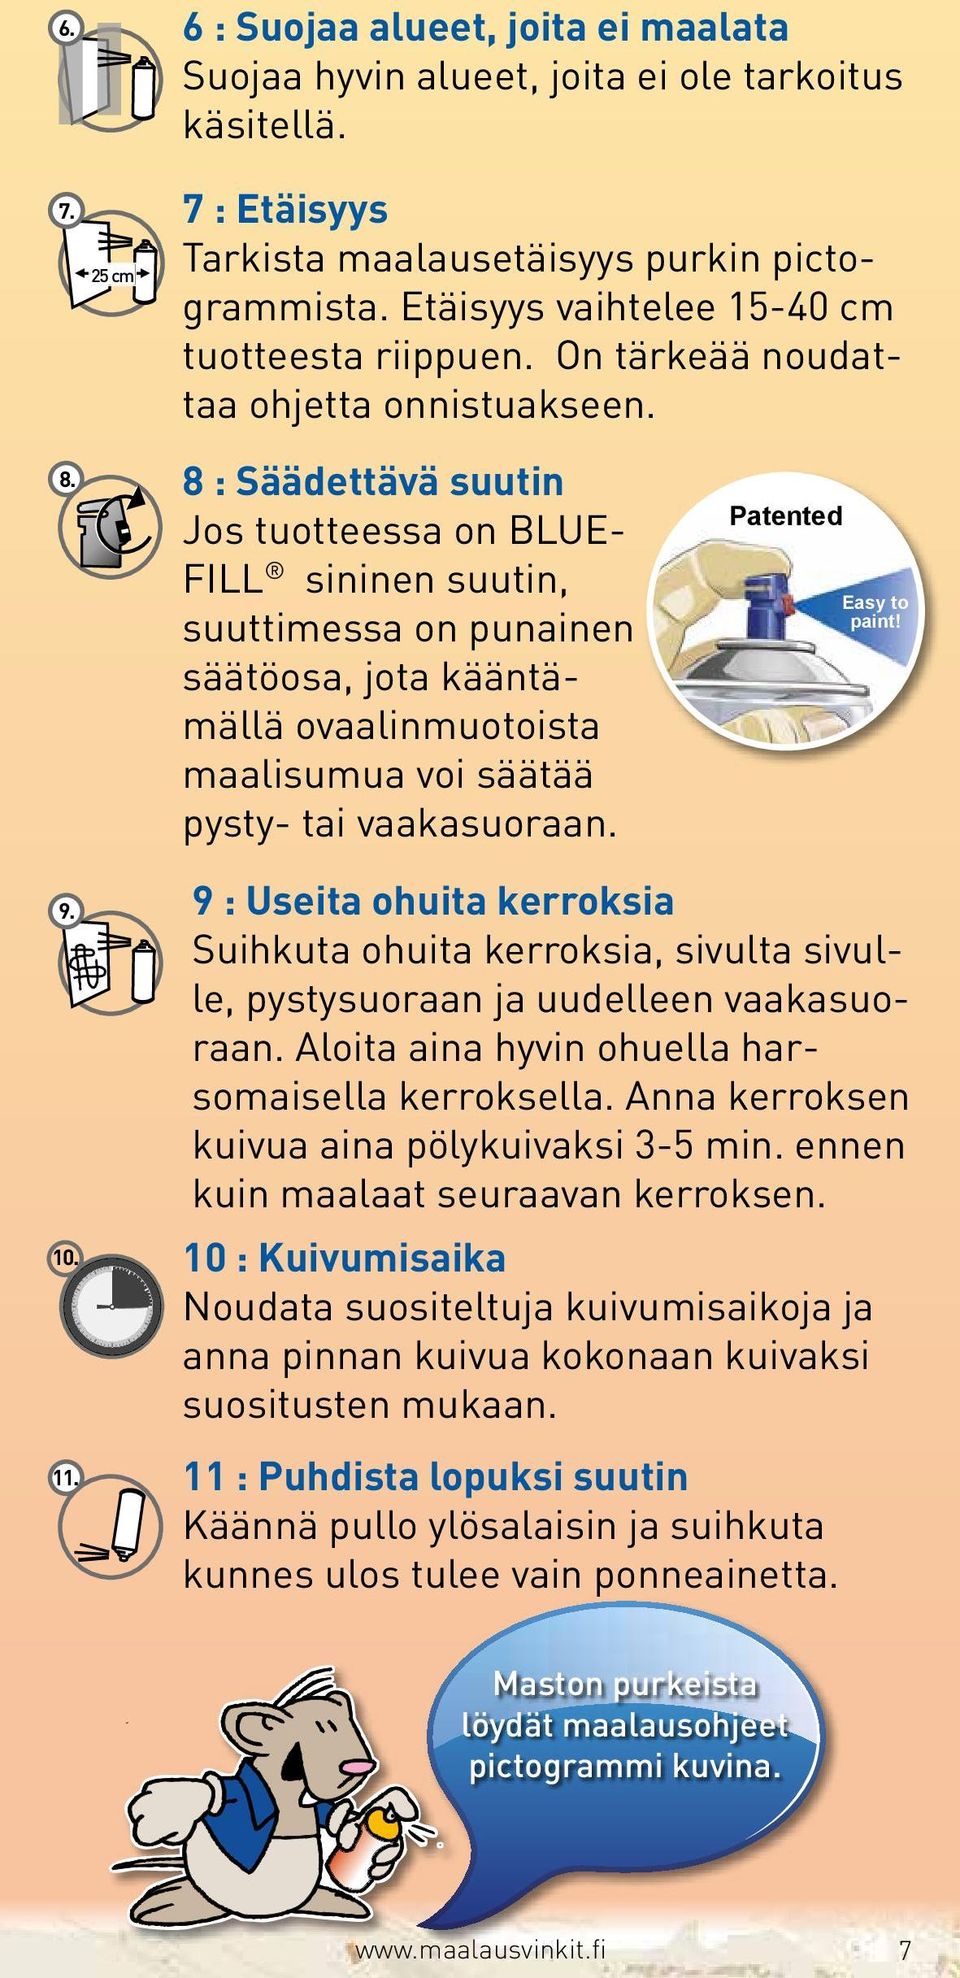 8 : Säädettävä suutin Jos tuotteessa on BLUE- FILL sininen suutin, suuttimessa on punainen säätöosa, jota kääntämällä ovaalinmuotoista maalisumua voi säätää pysty- tai vaakasuoraan.